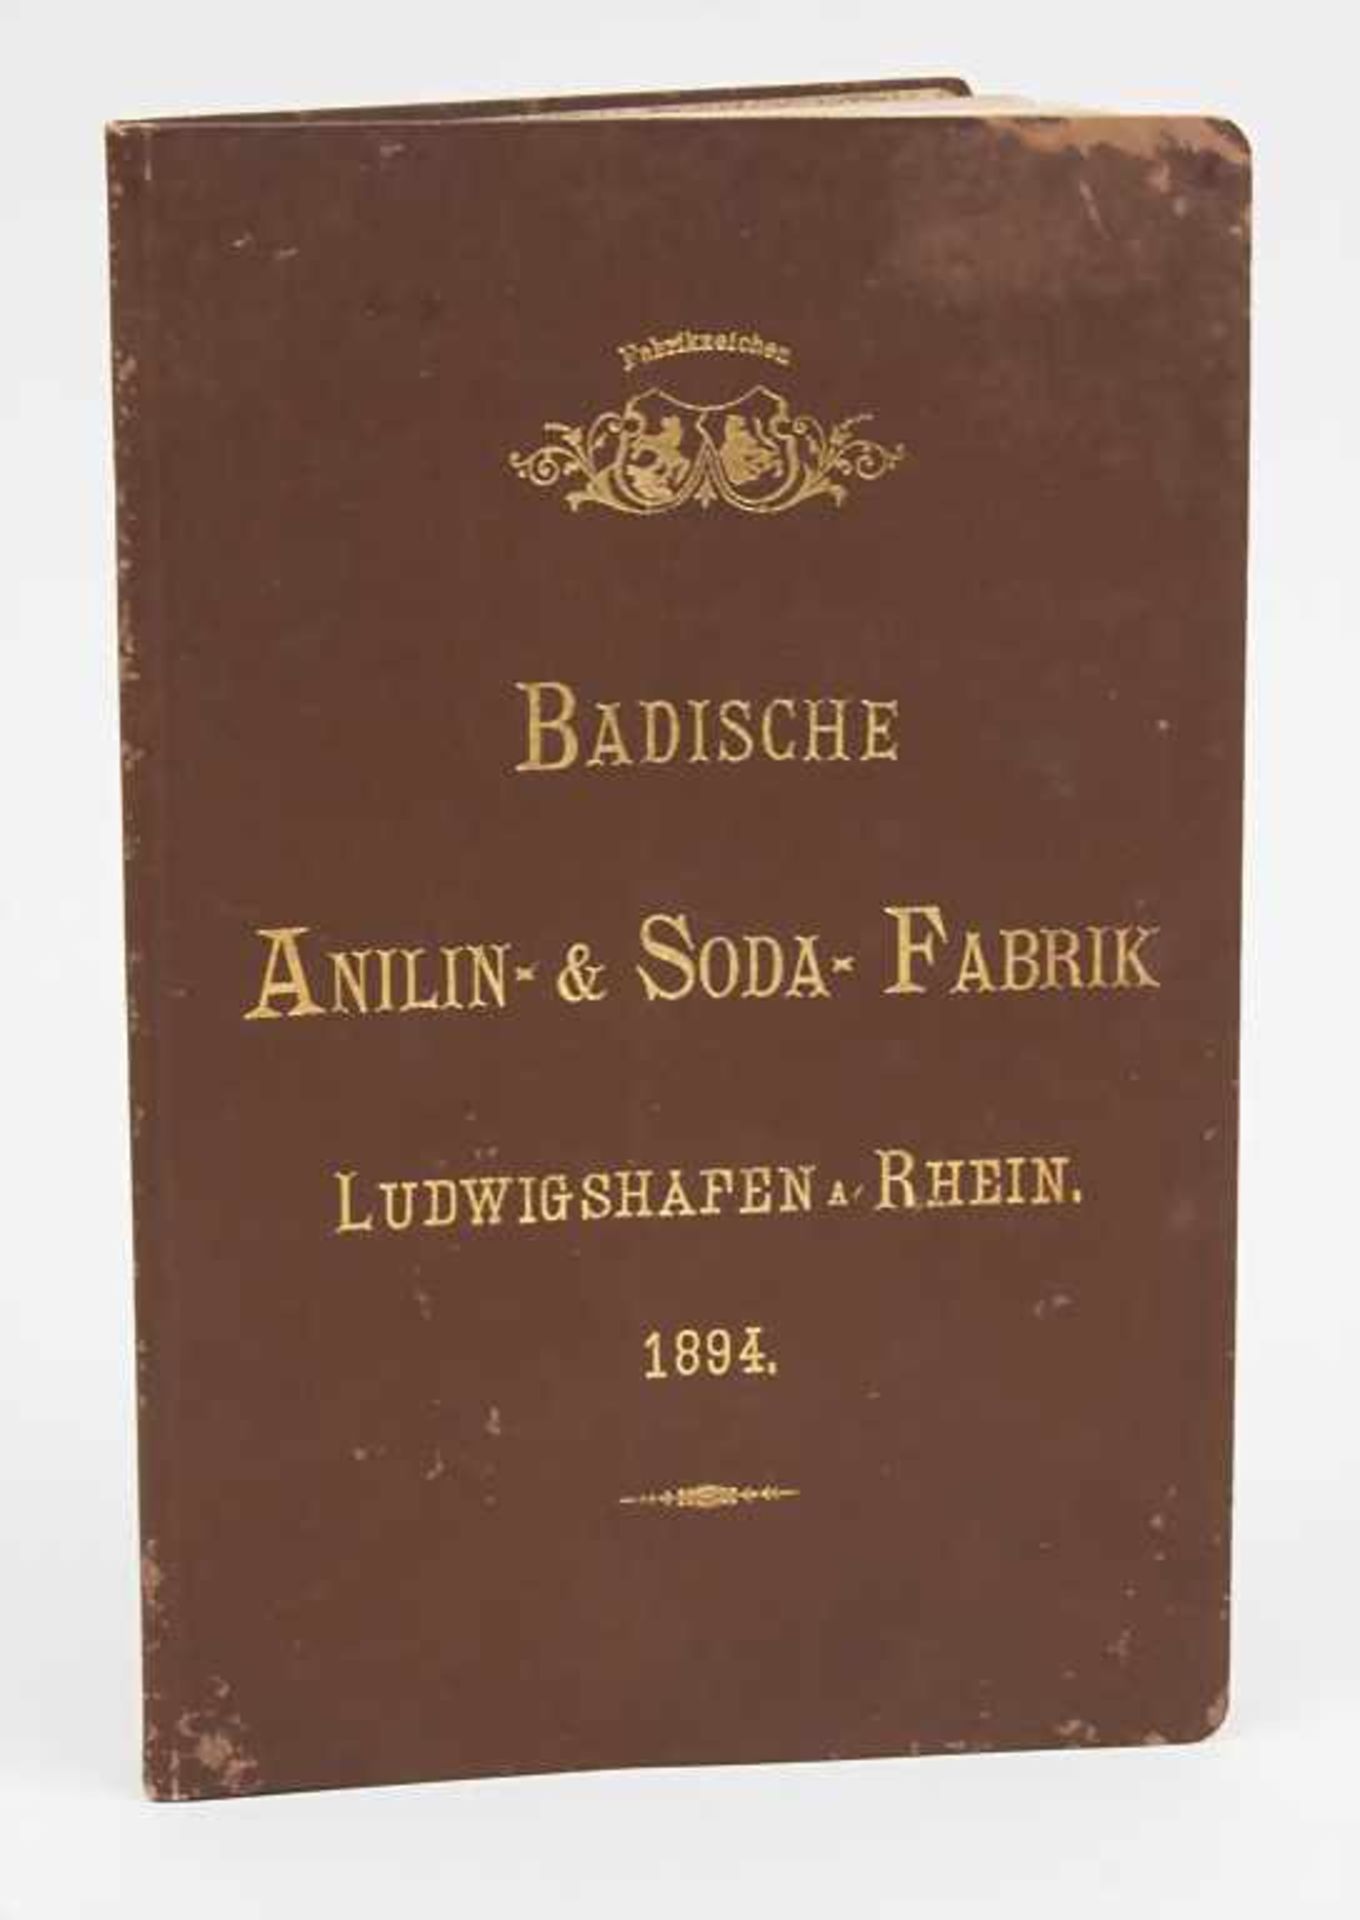 Antiquarisches Buch 'Badische Anilin- & Soda-Fabrik / An antiquarian book 'Badische Anilin- & Soda-